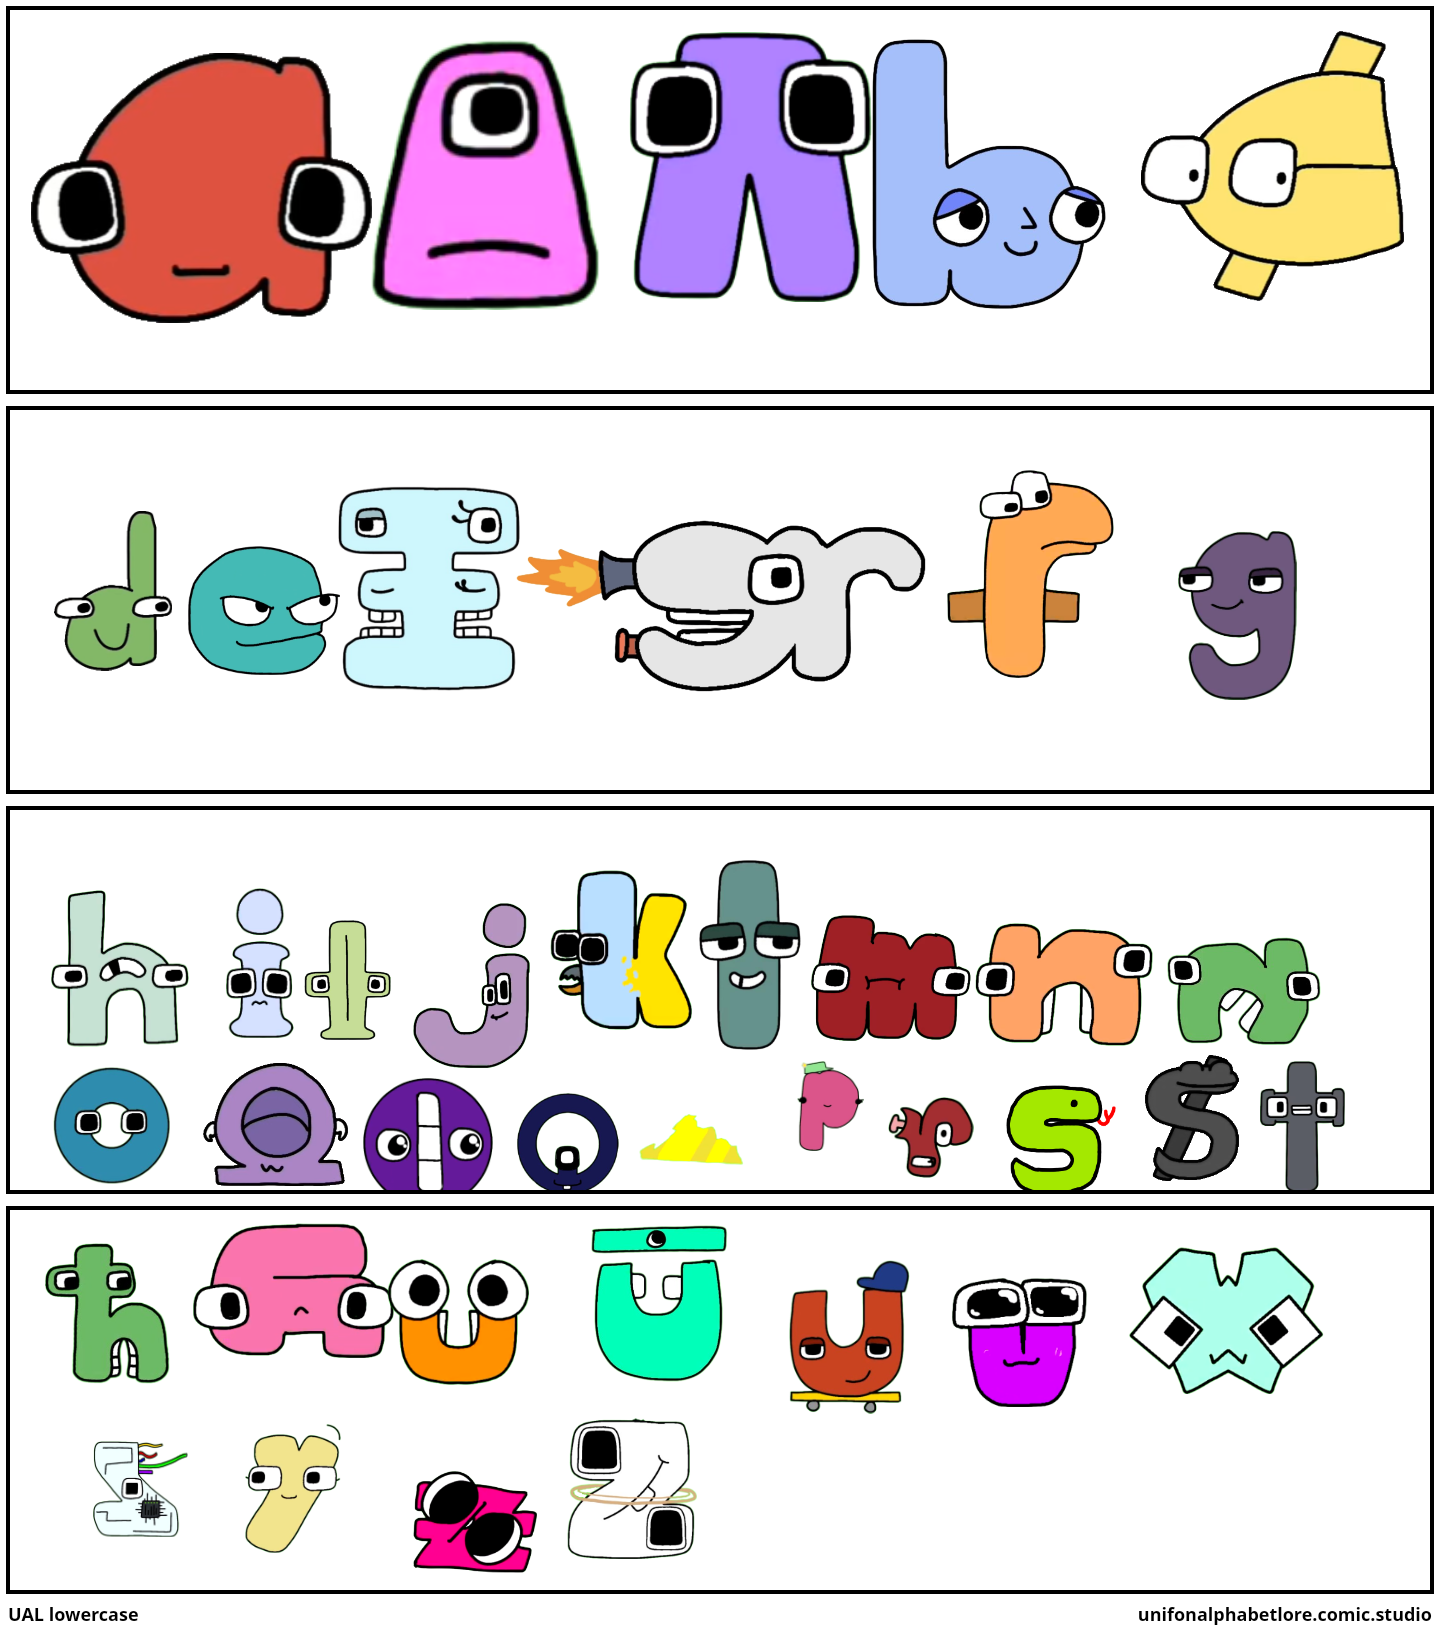 Unifon alphabet lore A-3E - Comic Studio